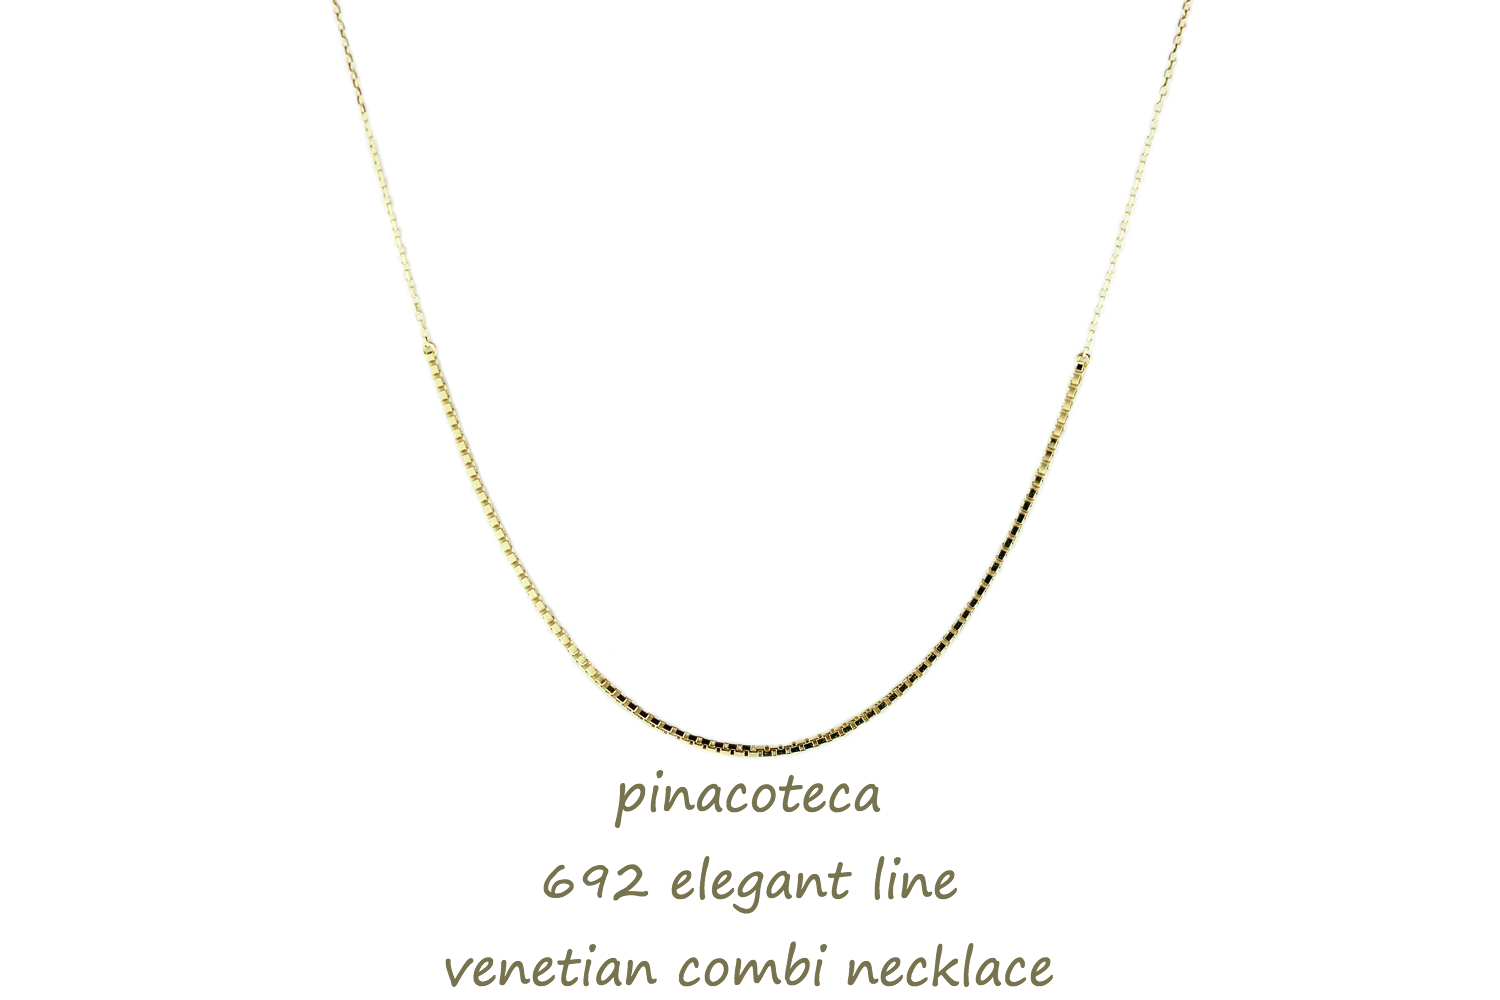 ピナコテーカ 692 エレガント ライン ベネチアン コンビ 華奢ネックレス 18金,pinacoteca Elegant Line Venetian Chain Necklace K18